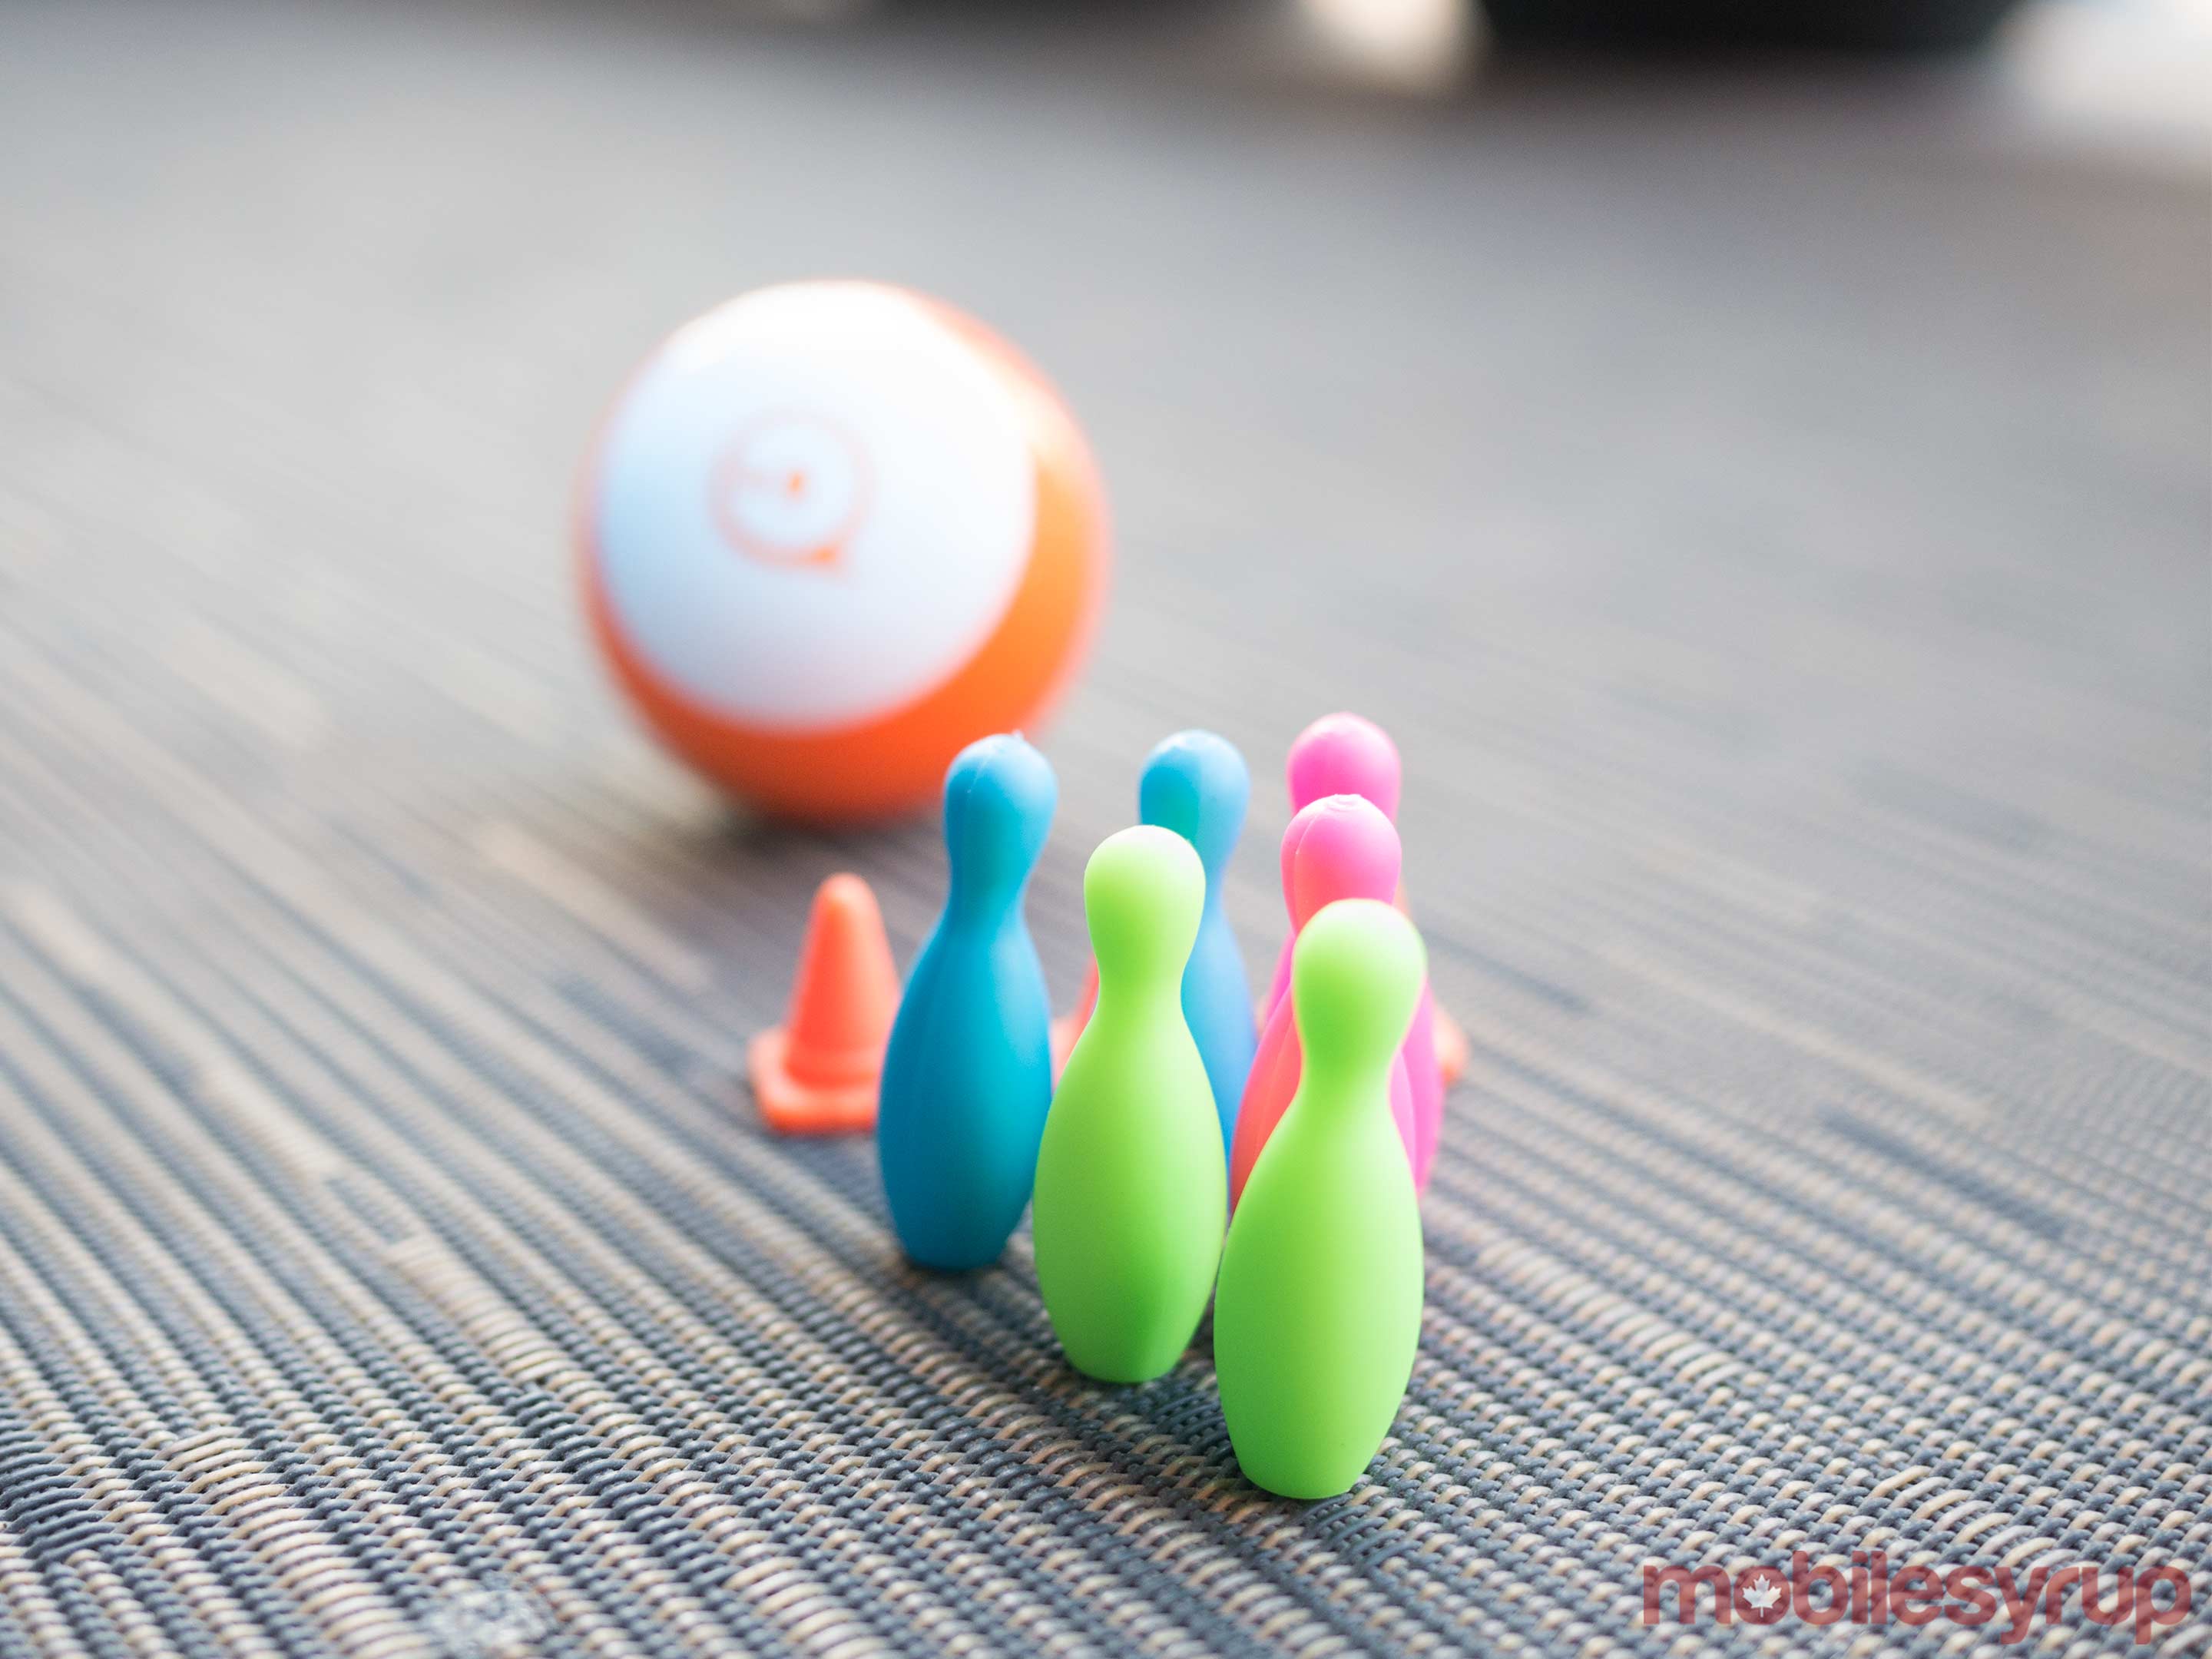 Sphero Mini bowling pins